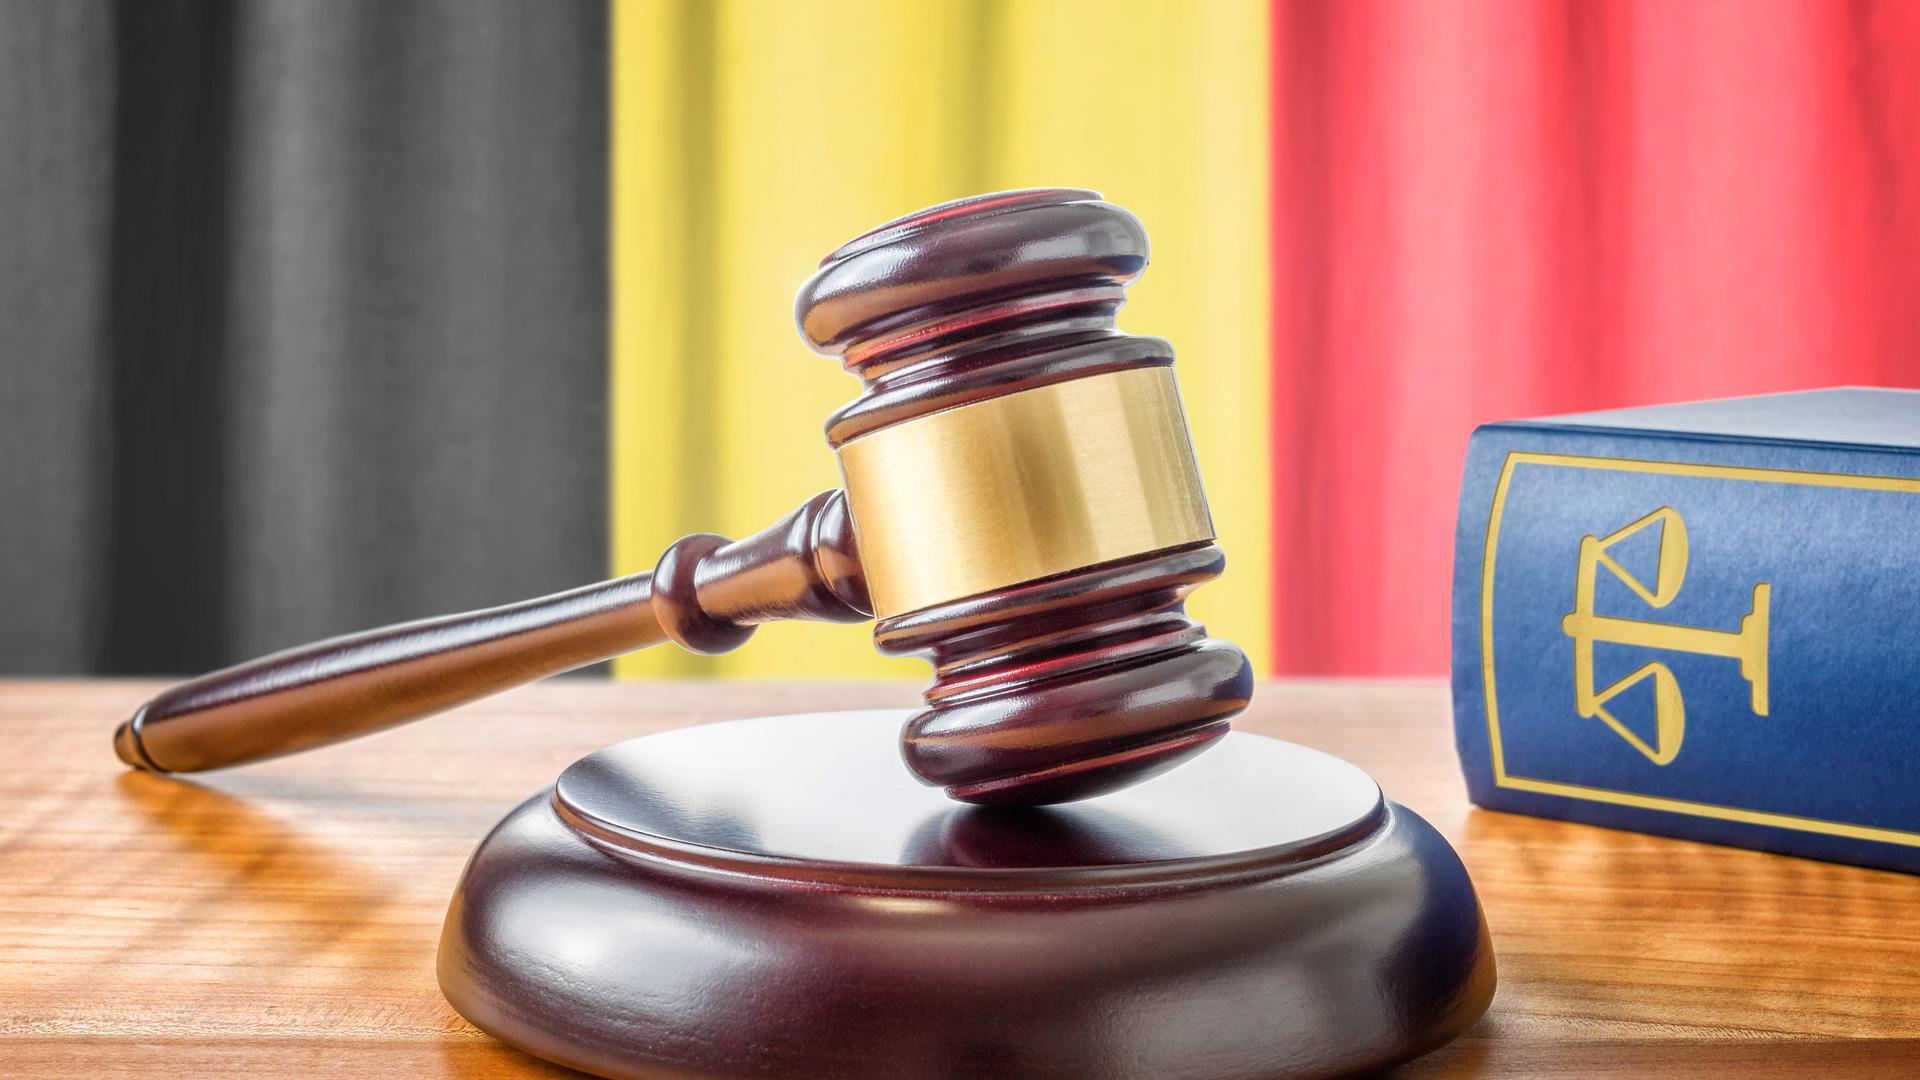 La justice belge a estimé jeudi que la «pratique (...) paraît constitutive d'un traitement dégradant prohibé» par la Convention européenne des droits de l'homme.